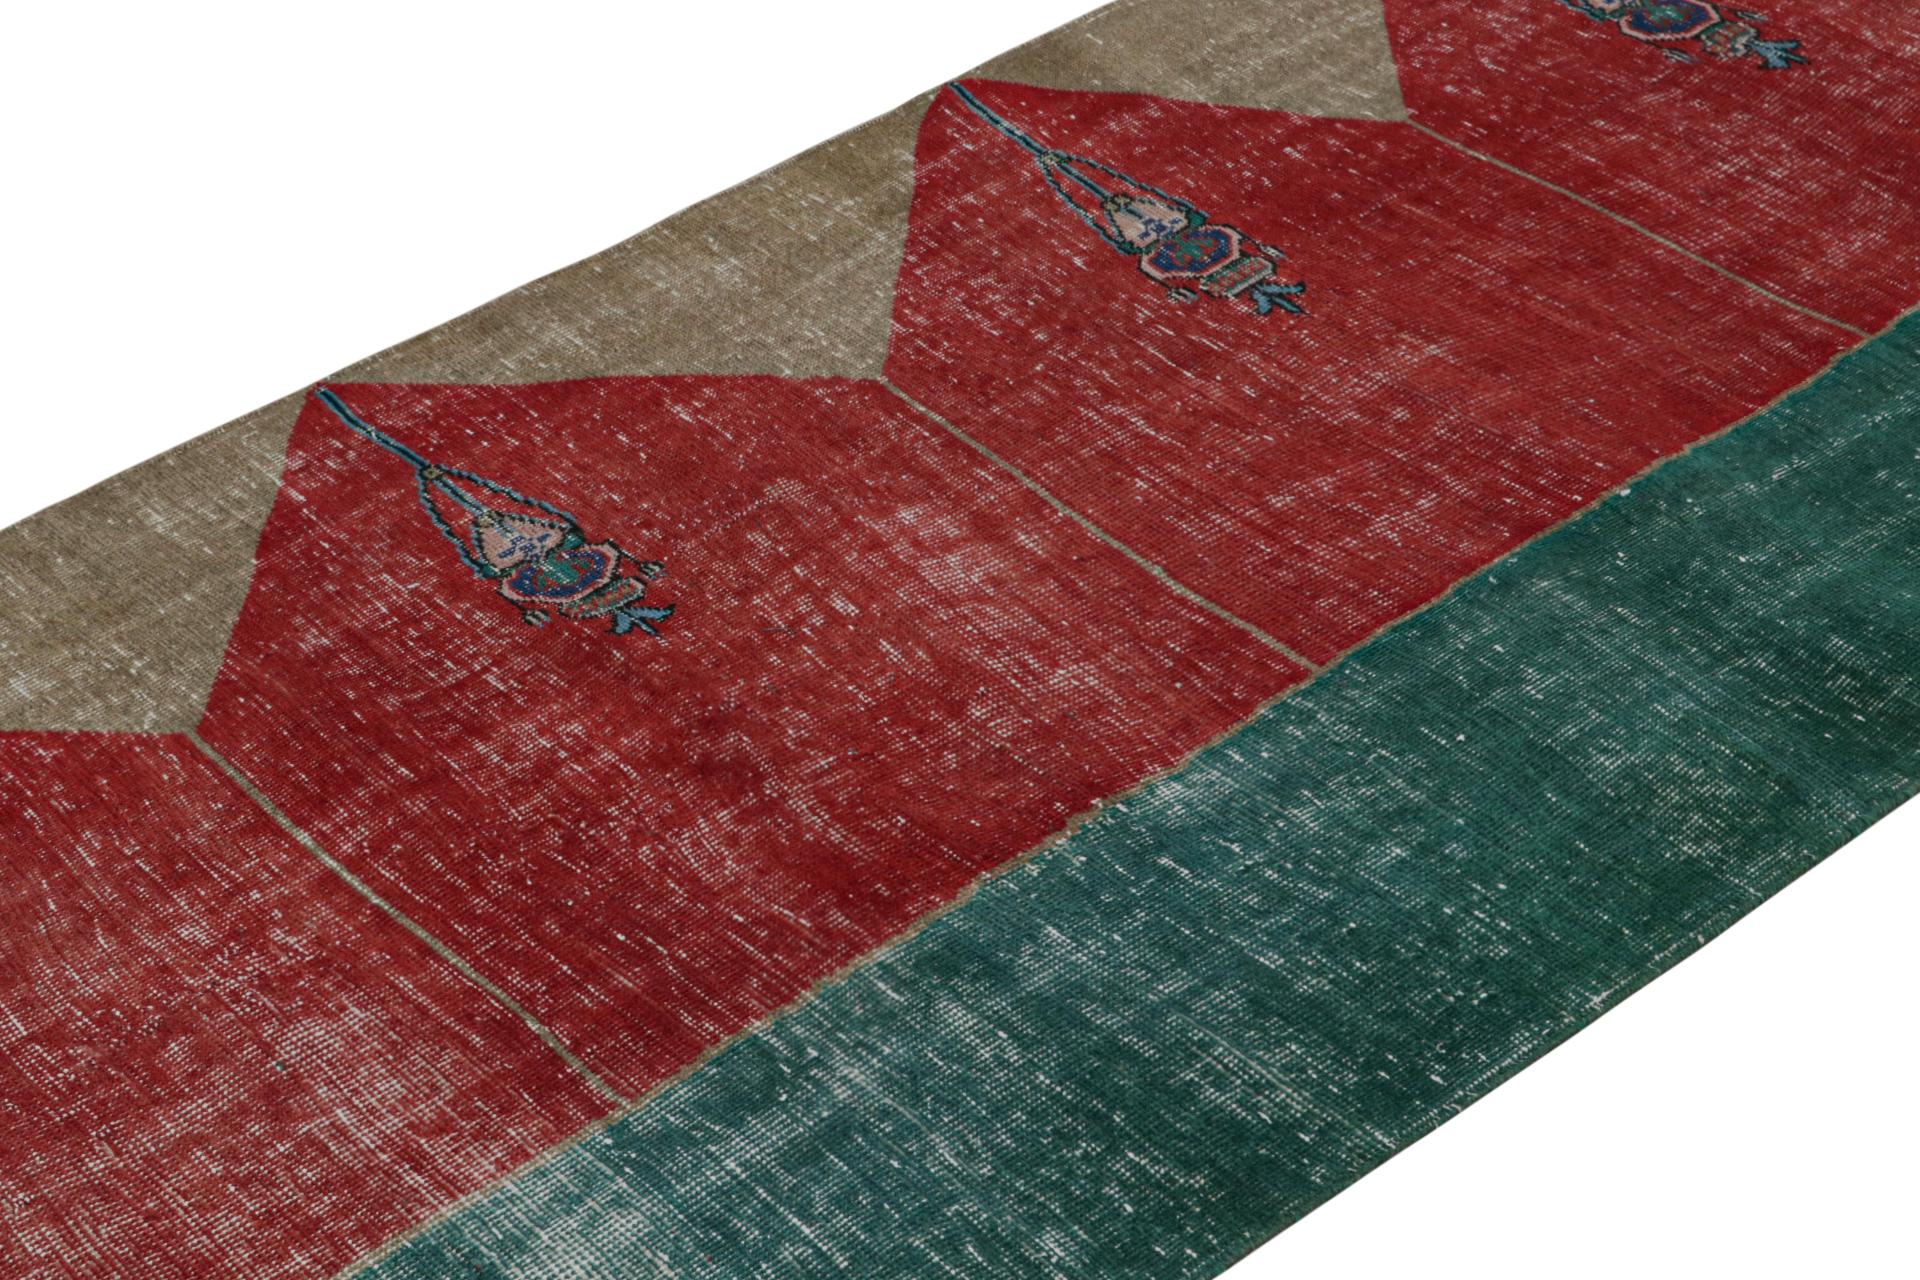 Handgeknüpfter türkischer Läufer 4x14 aus Wolle, ca. 1950-1960 - der neueste Eintrag in der Vintage-Auswahl von Rug & Kilim.

Über das Design:

Das Design ist von Saf-Teppichen inspiriert - eine Art Gebetsteppich, der für diesen Look bekannt ist.